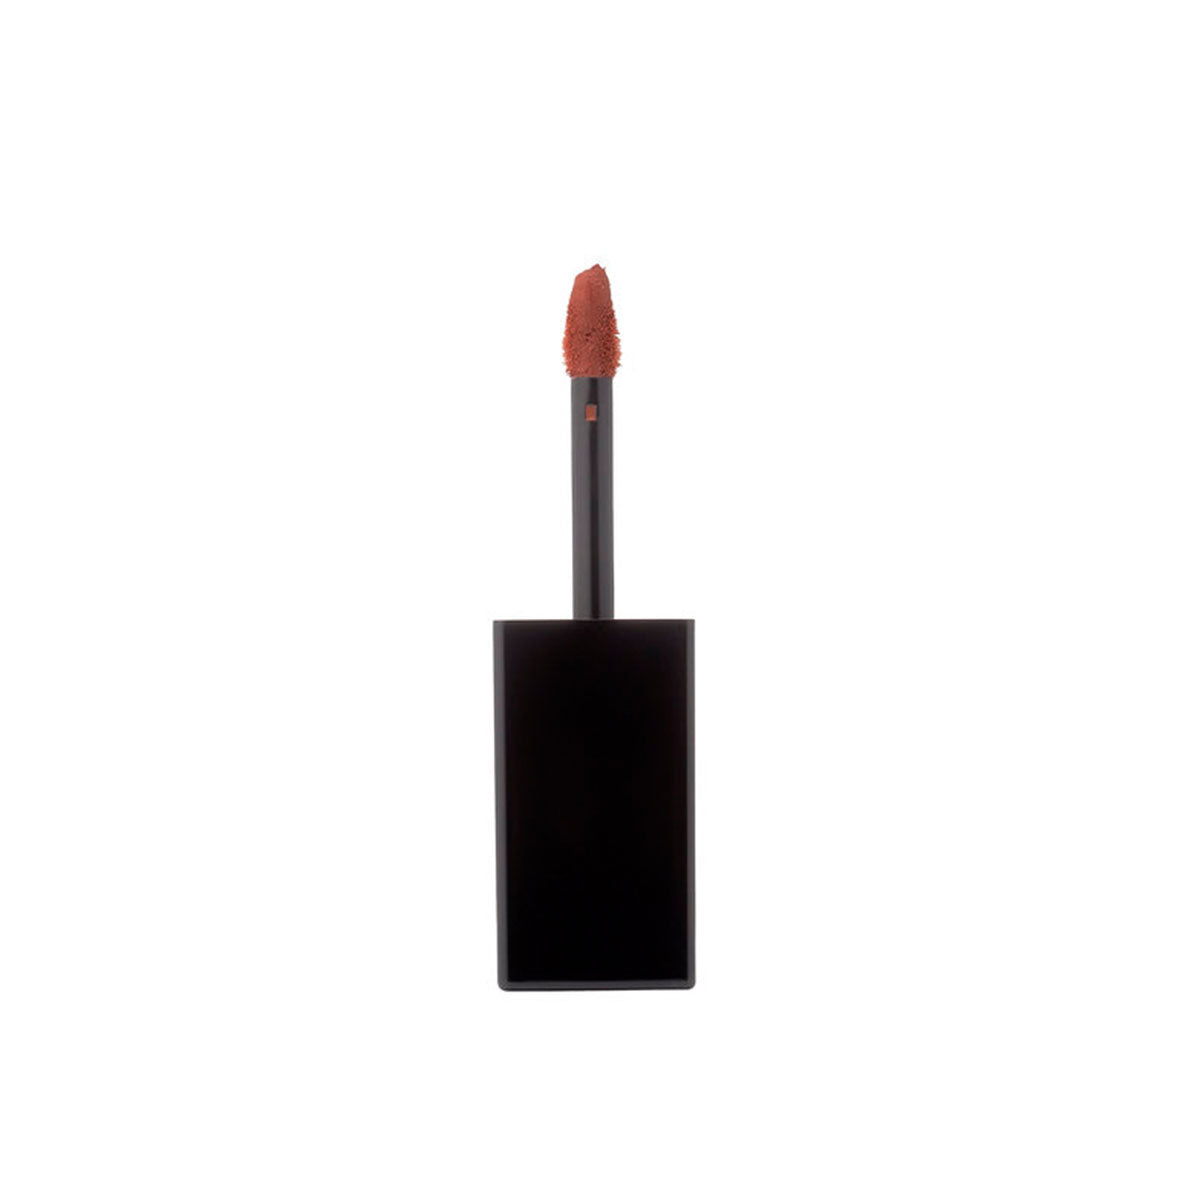 Liquid Rouge Lip Gloss Quick-drying Matte Texture #Garnet Brown 4g